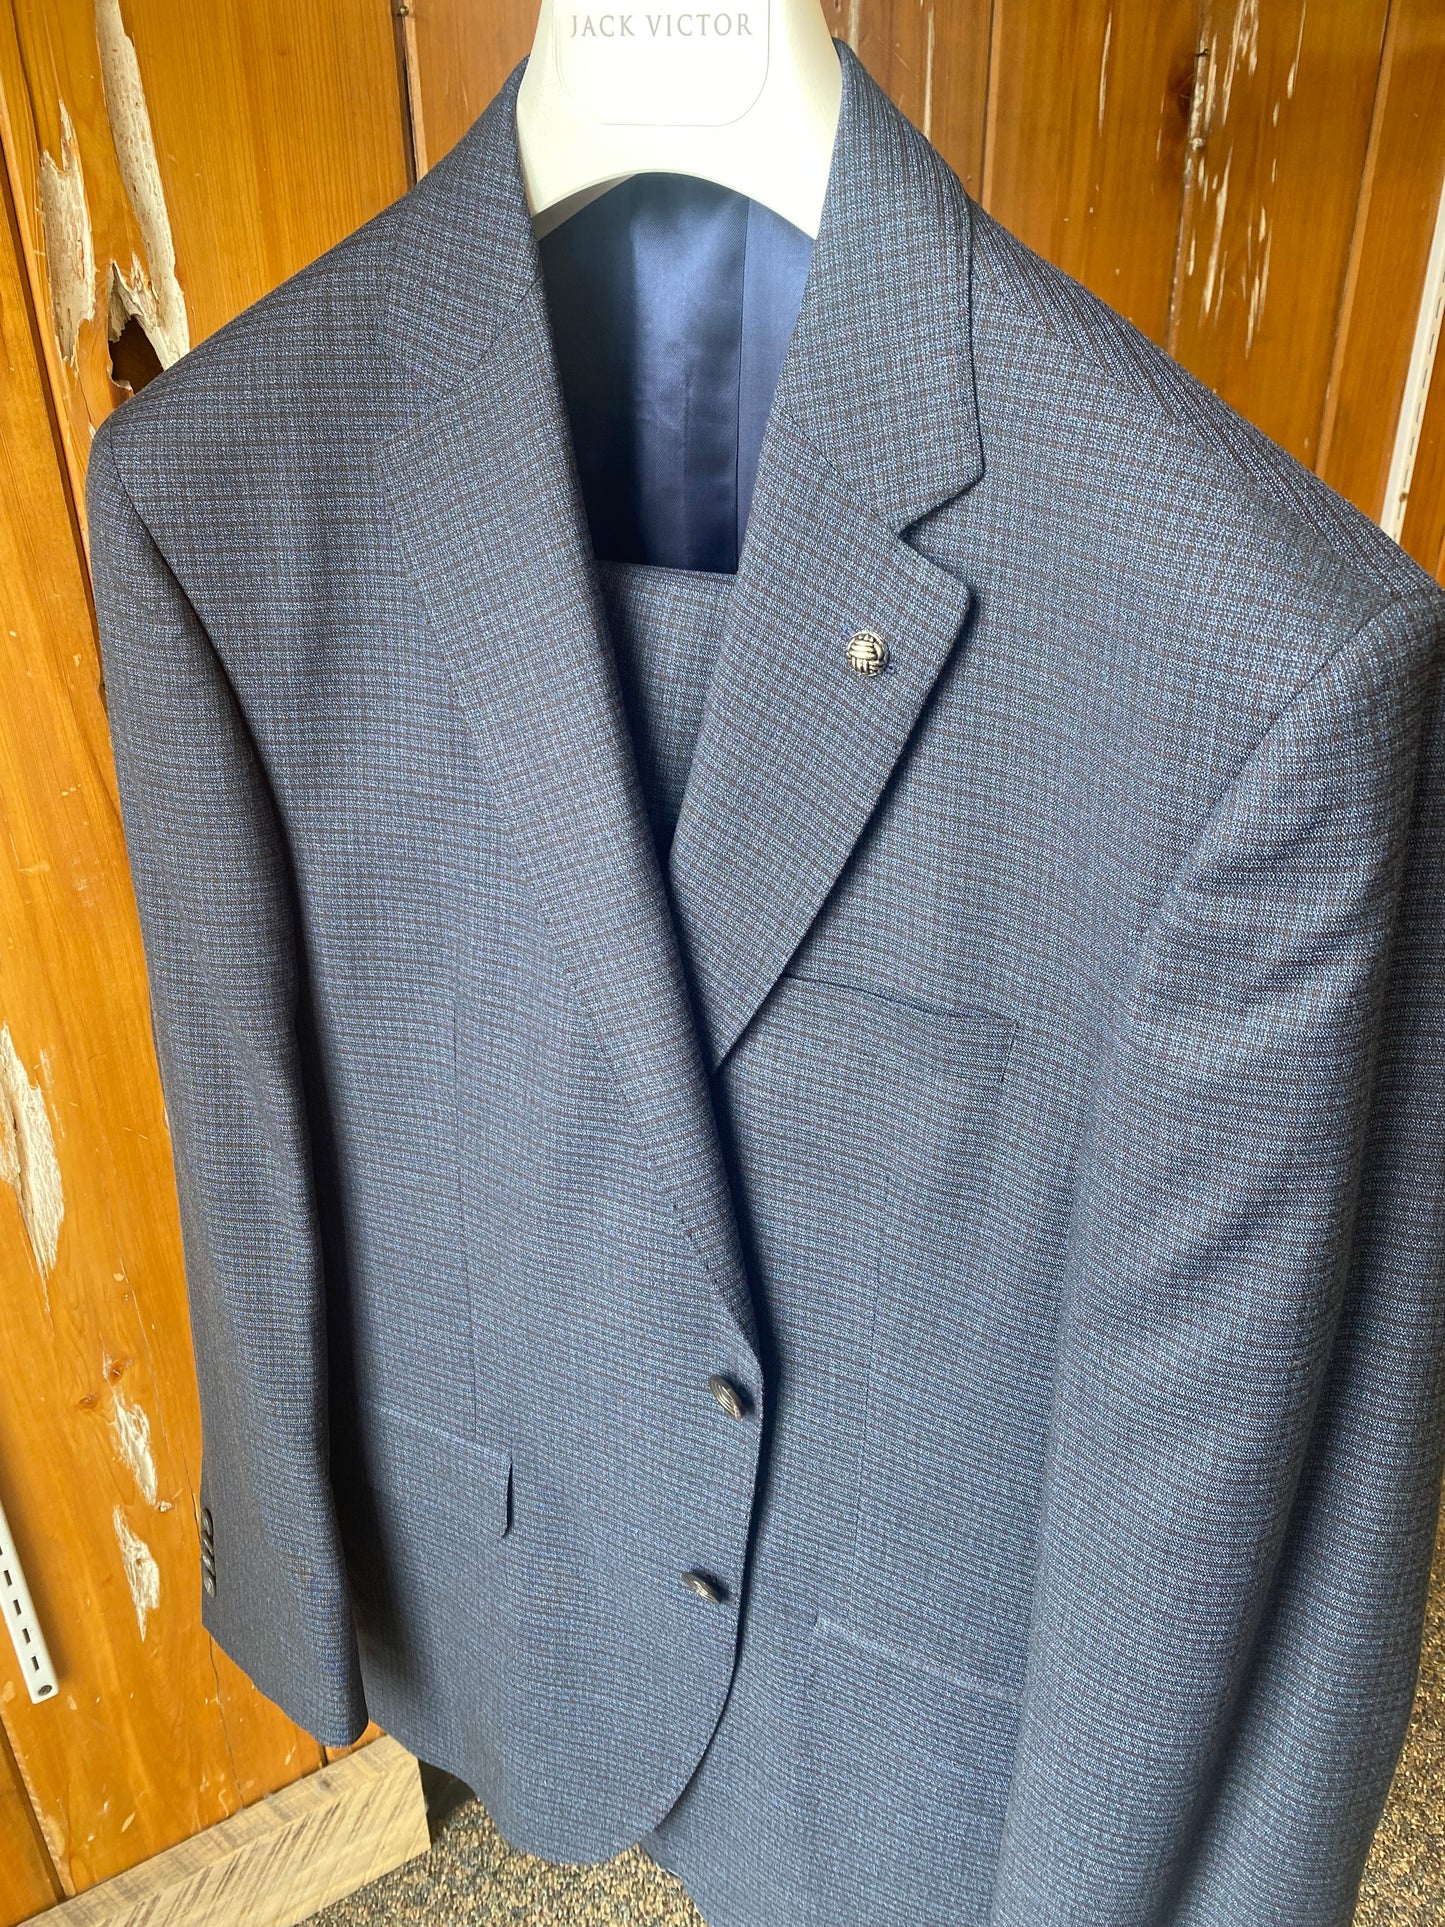 Jack Victor Suit 3232008